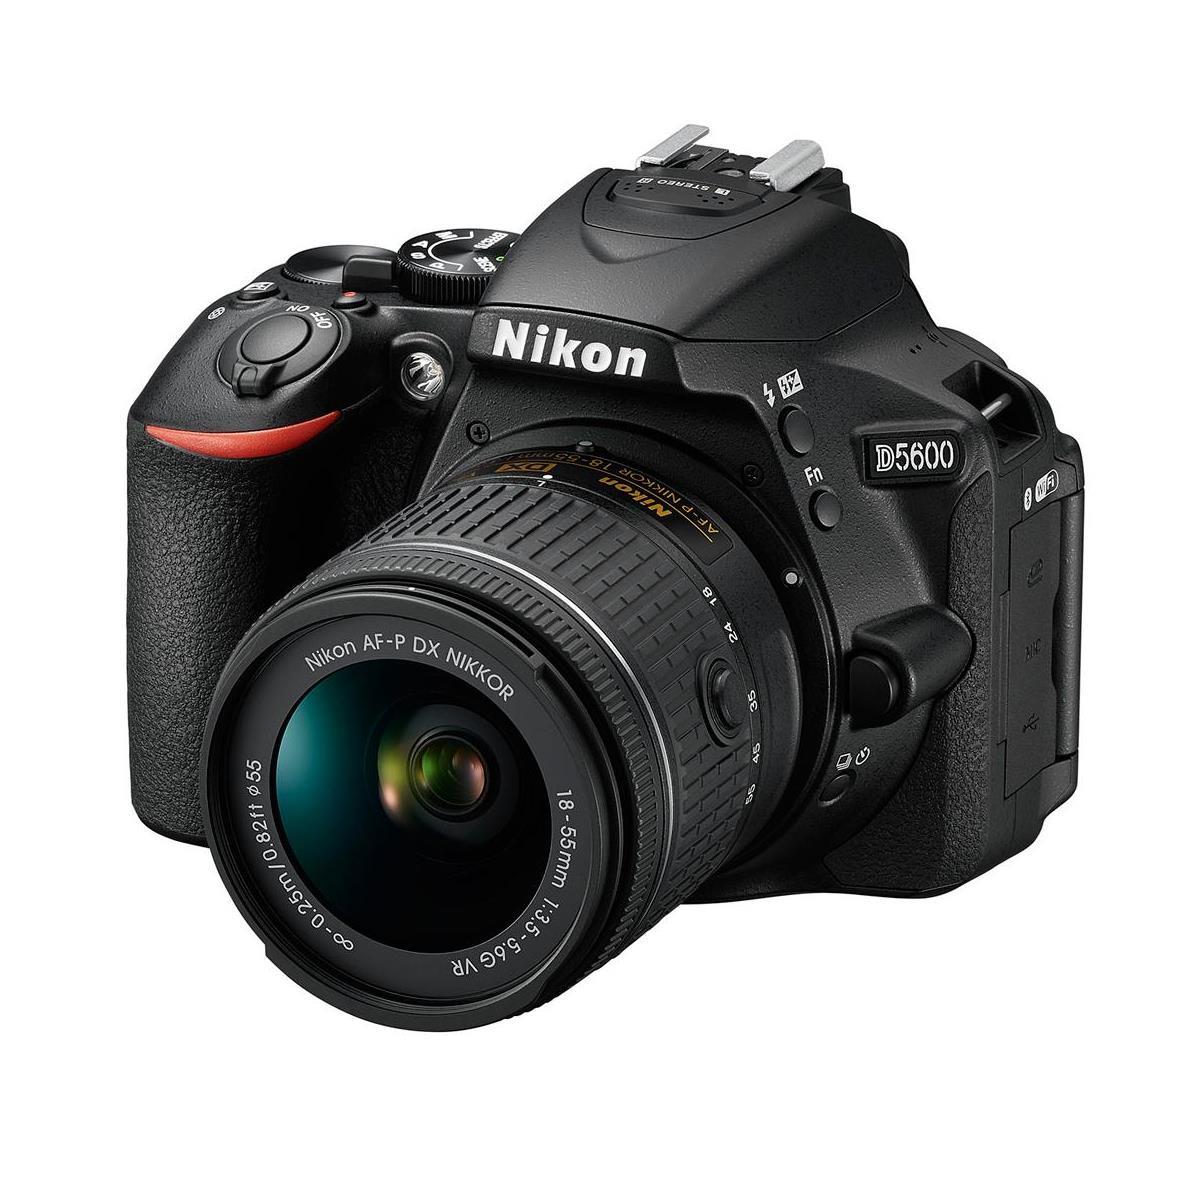 Nikon D5600 DSLR with 18-55mm DX VR Lens